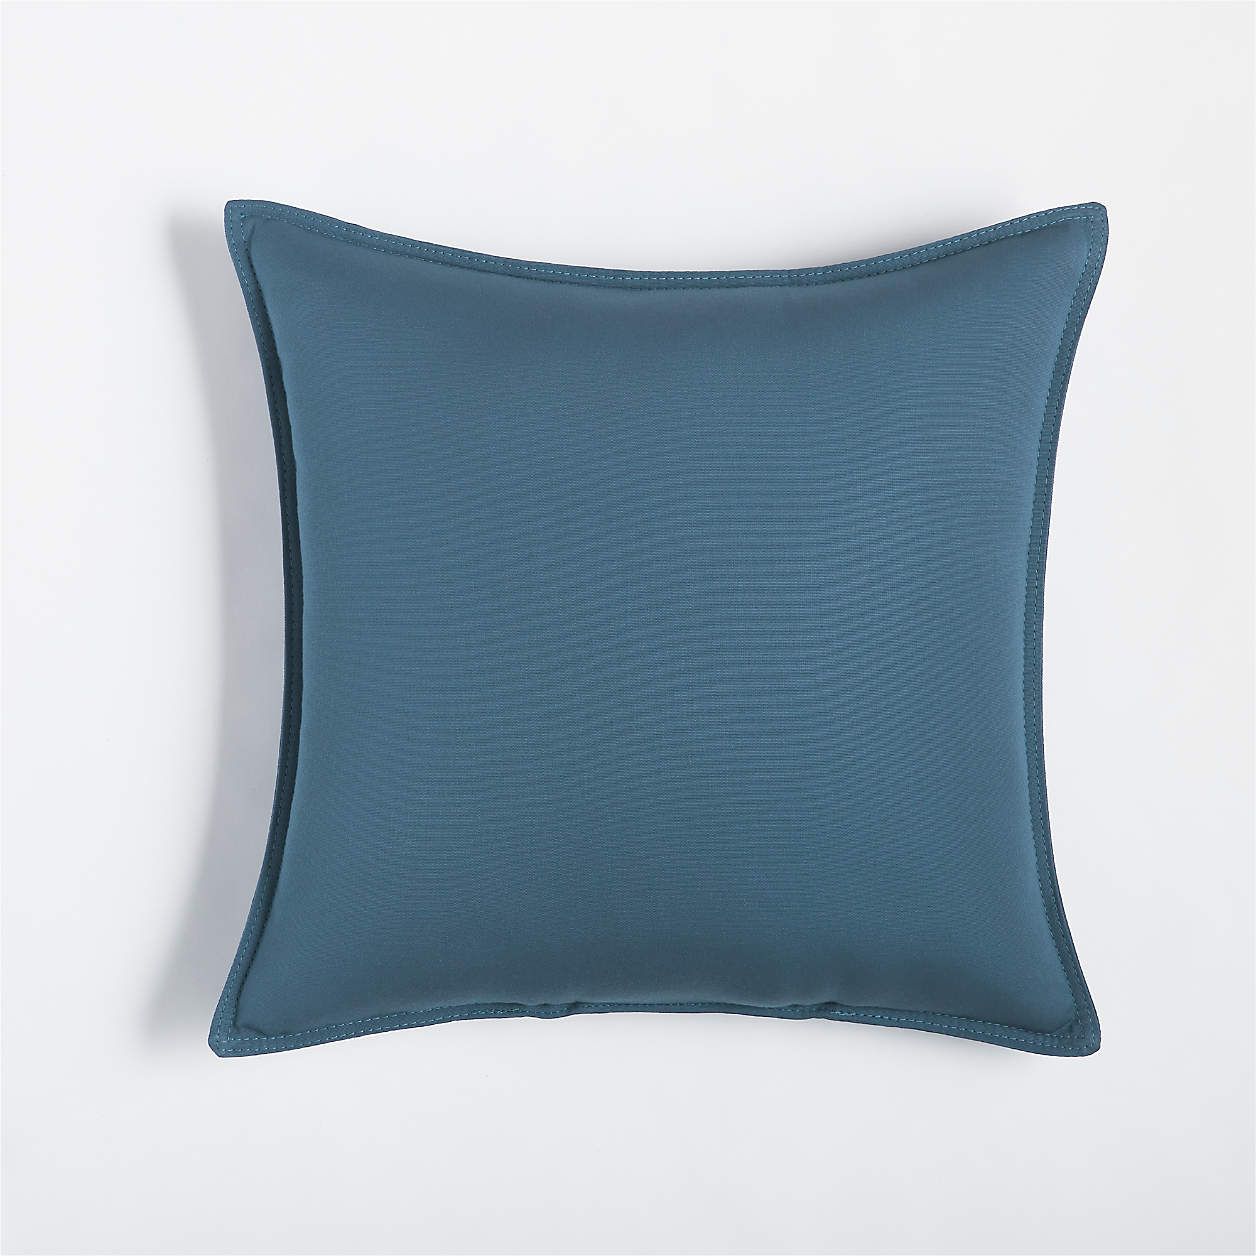 Sunbrella Spa Blue 20"x20" Outdoor Pillow + Reviews | Crate & Barrel | Crate & Barrel